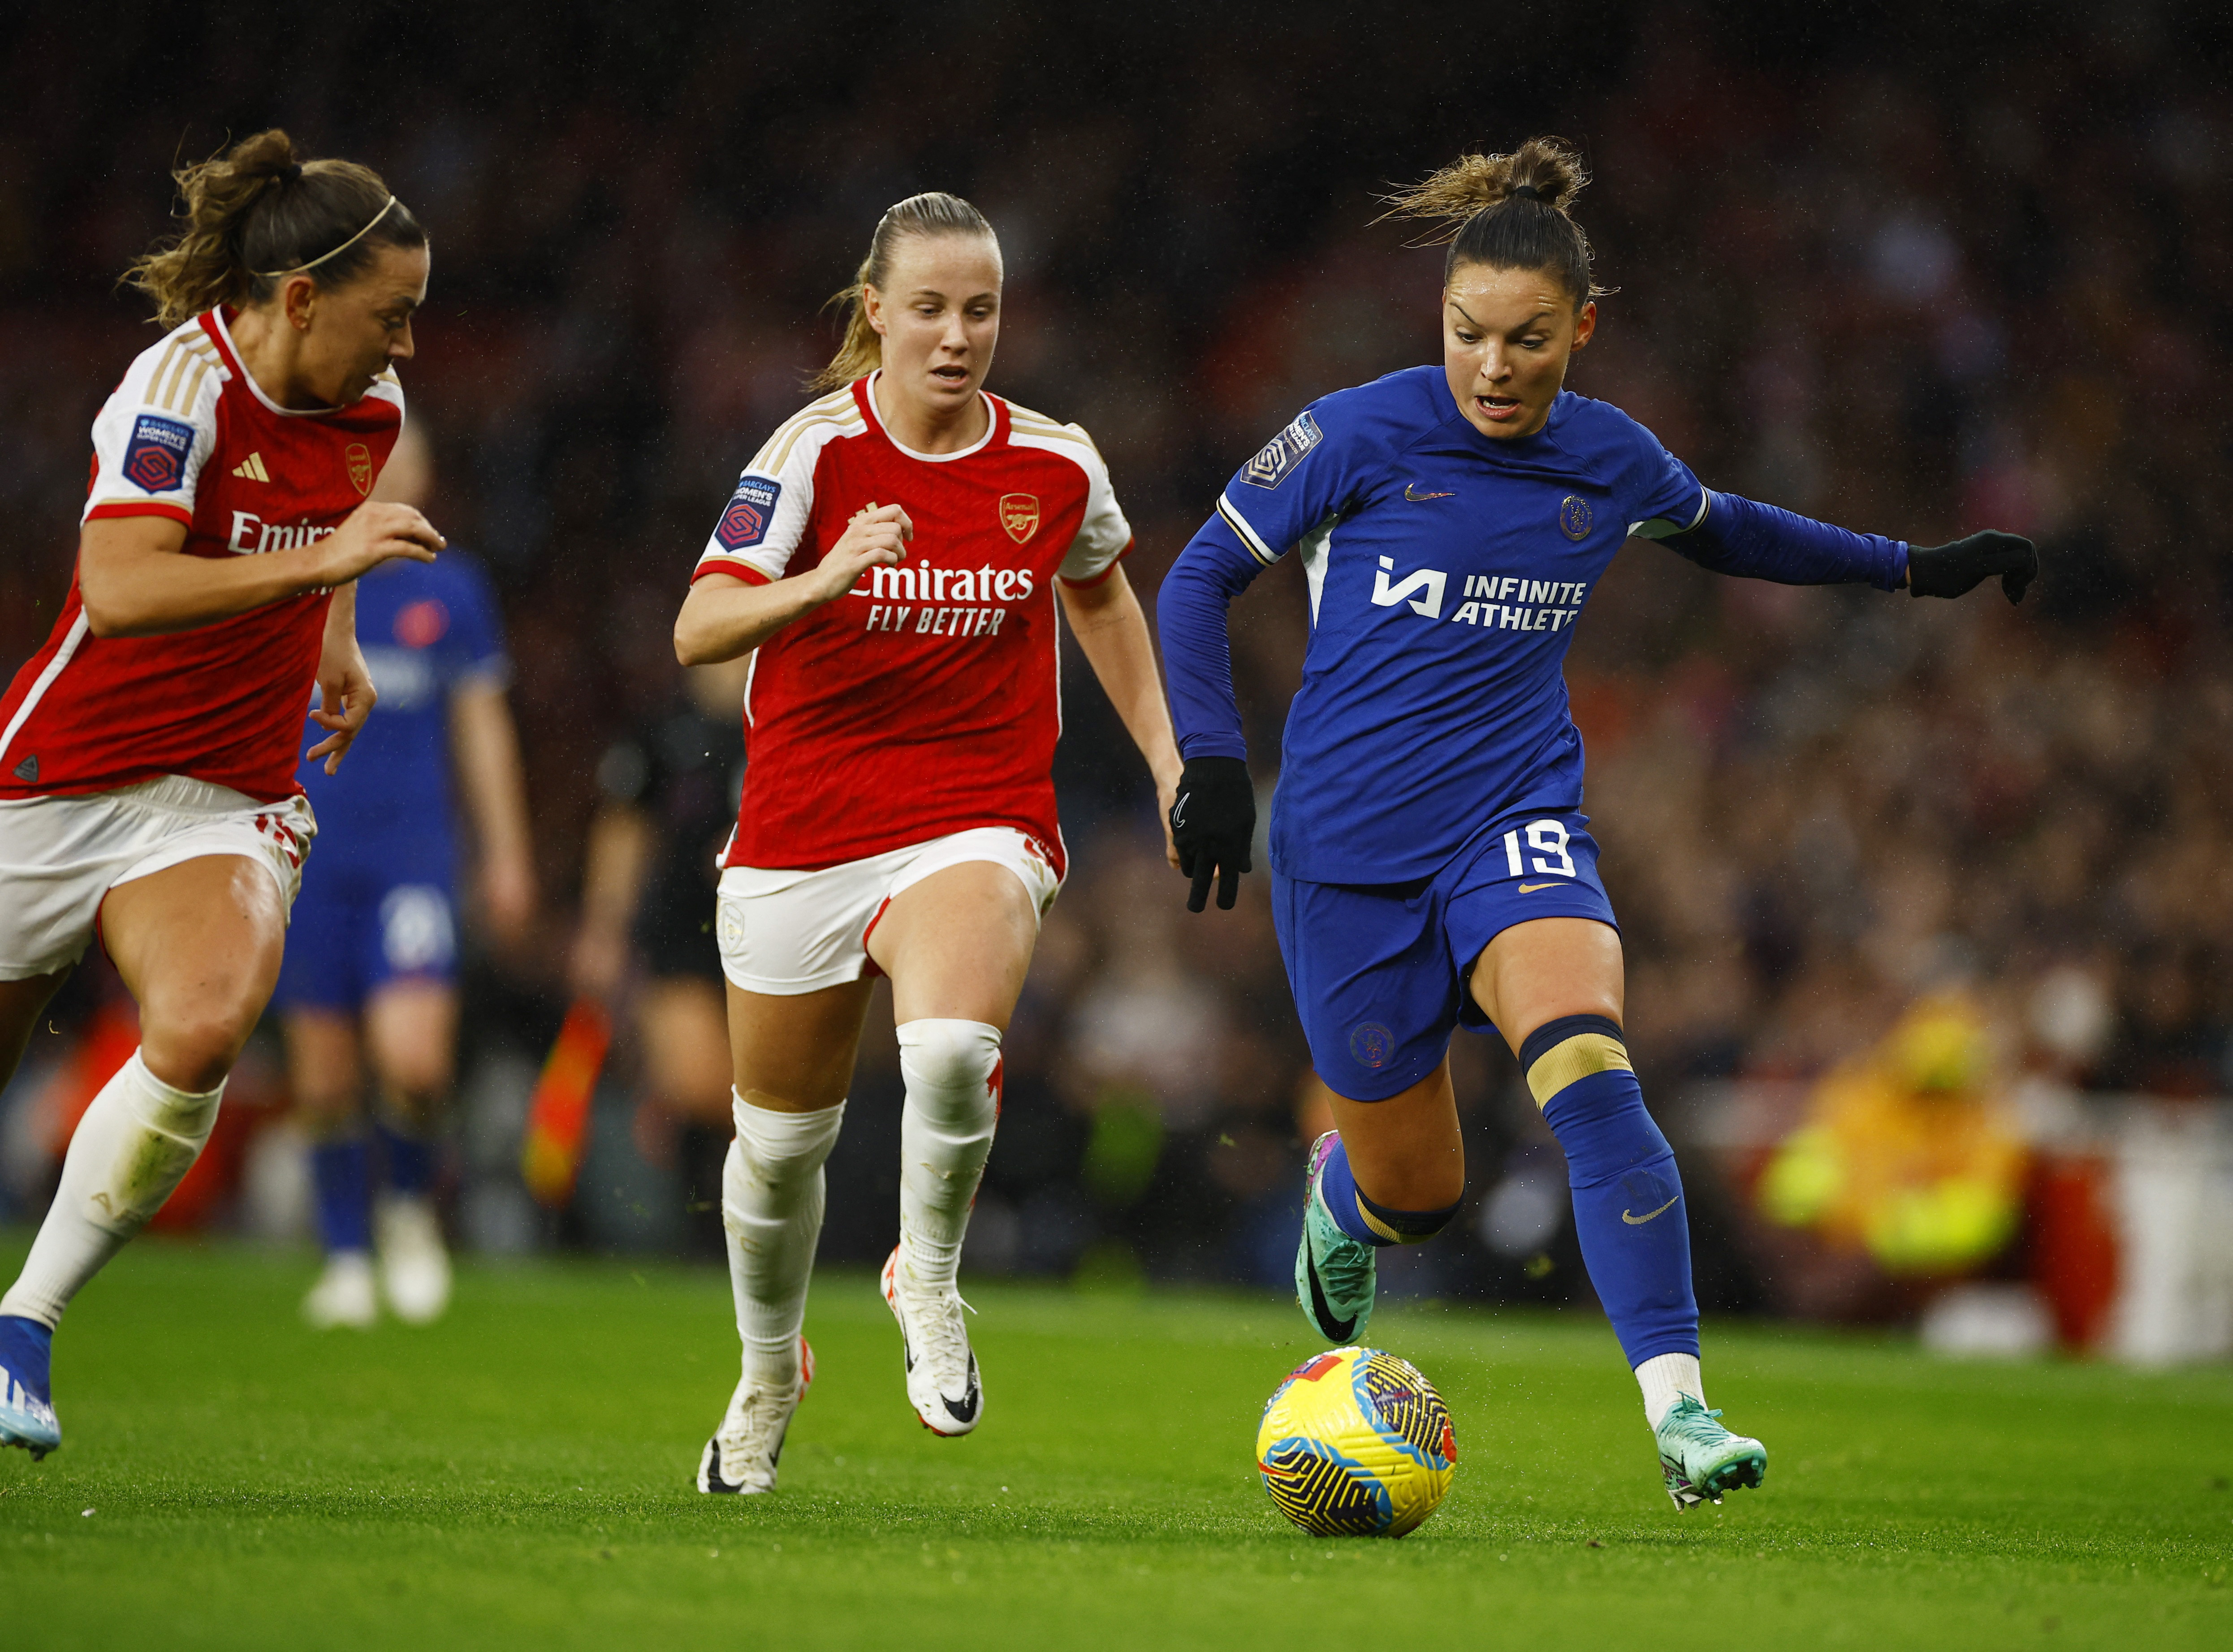 Chelseas einziges Tor des Spiels fiel durch Johanna Rytting Kaneryds Ausgleichstreffer in der ersten Halbzeit